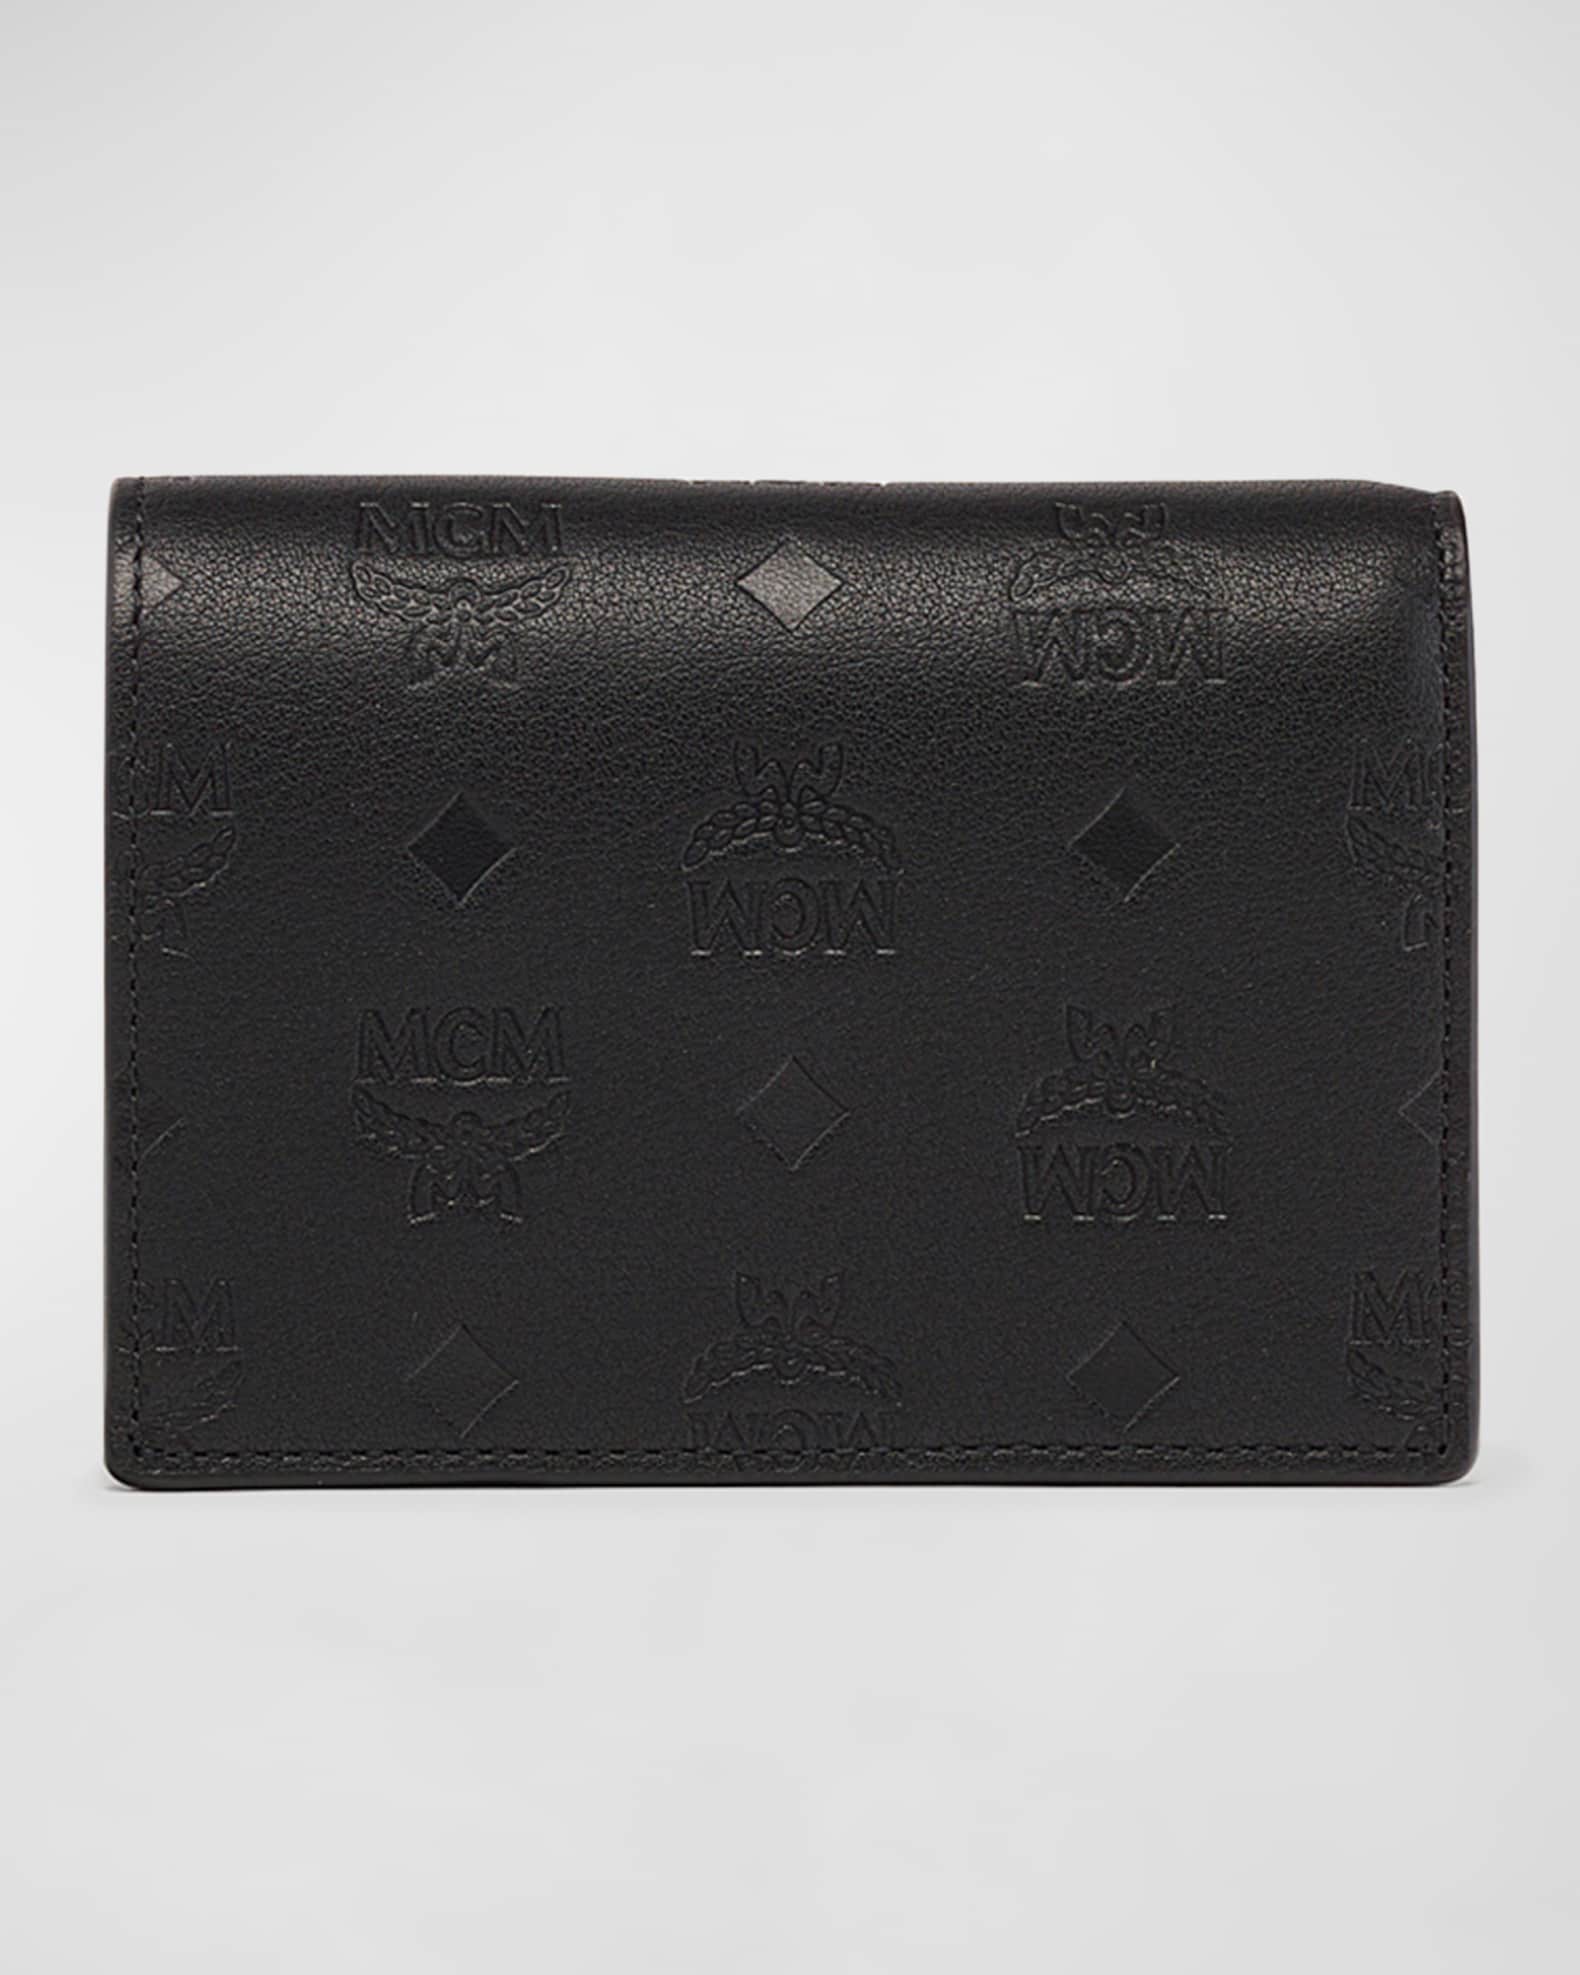 mcm wallet black